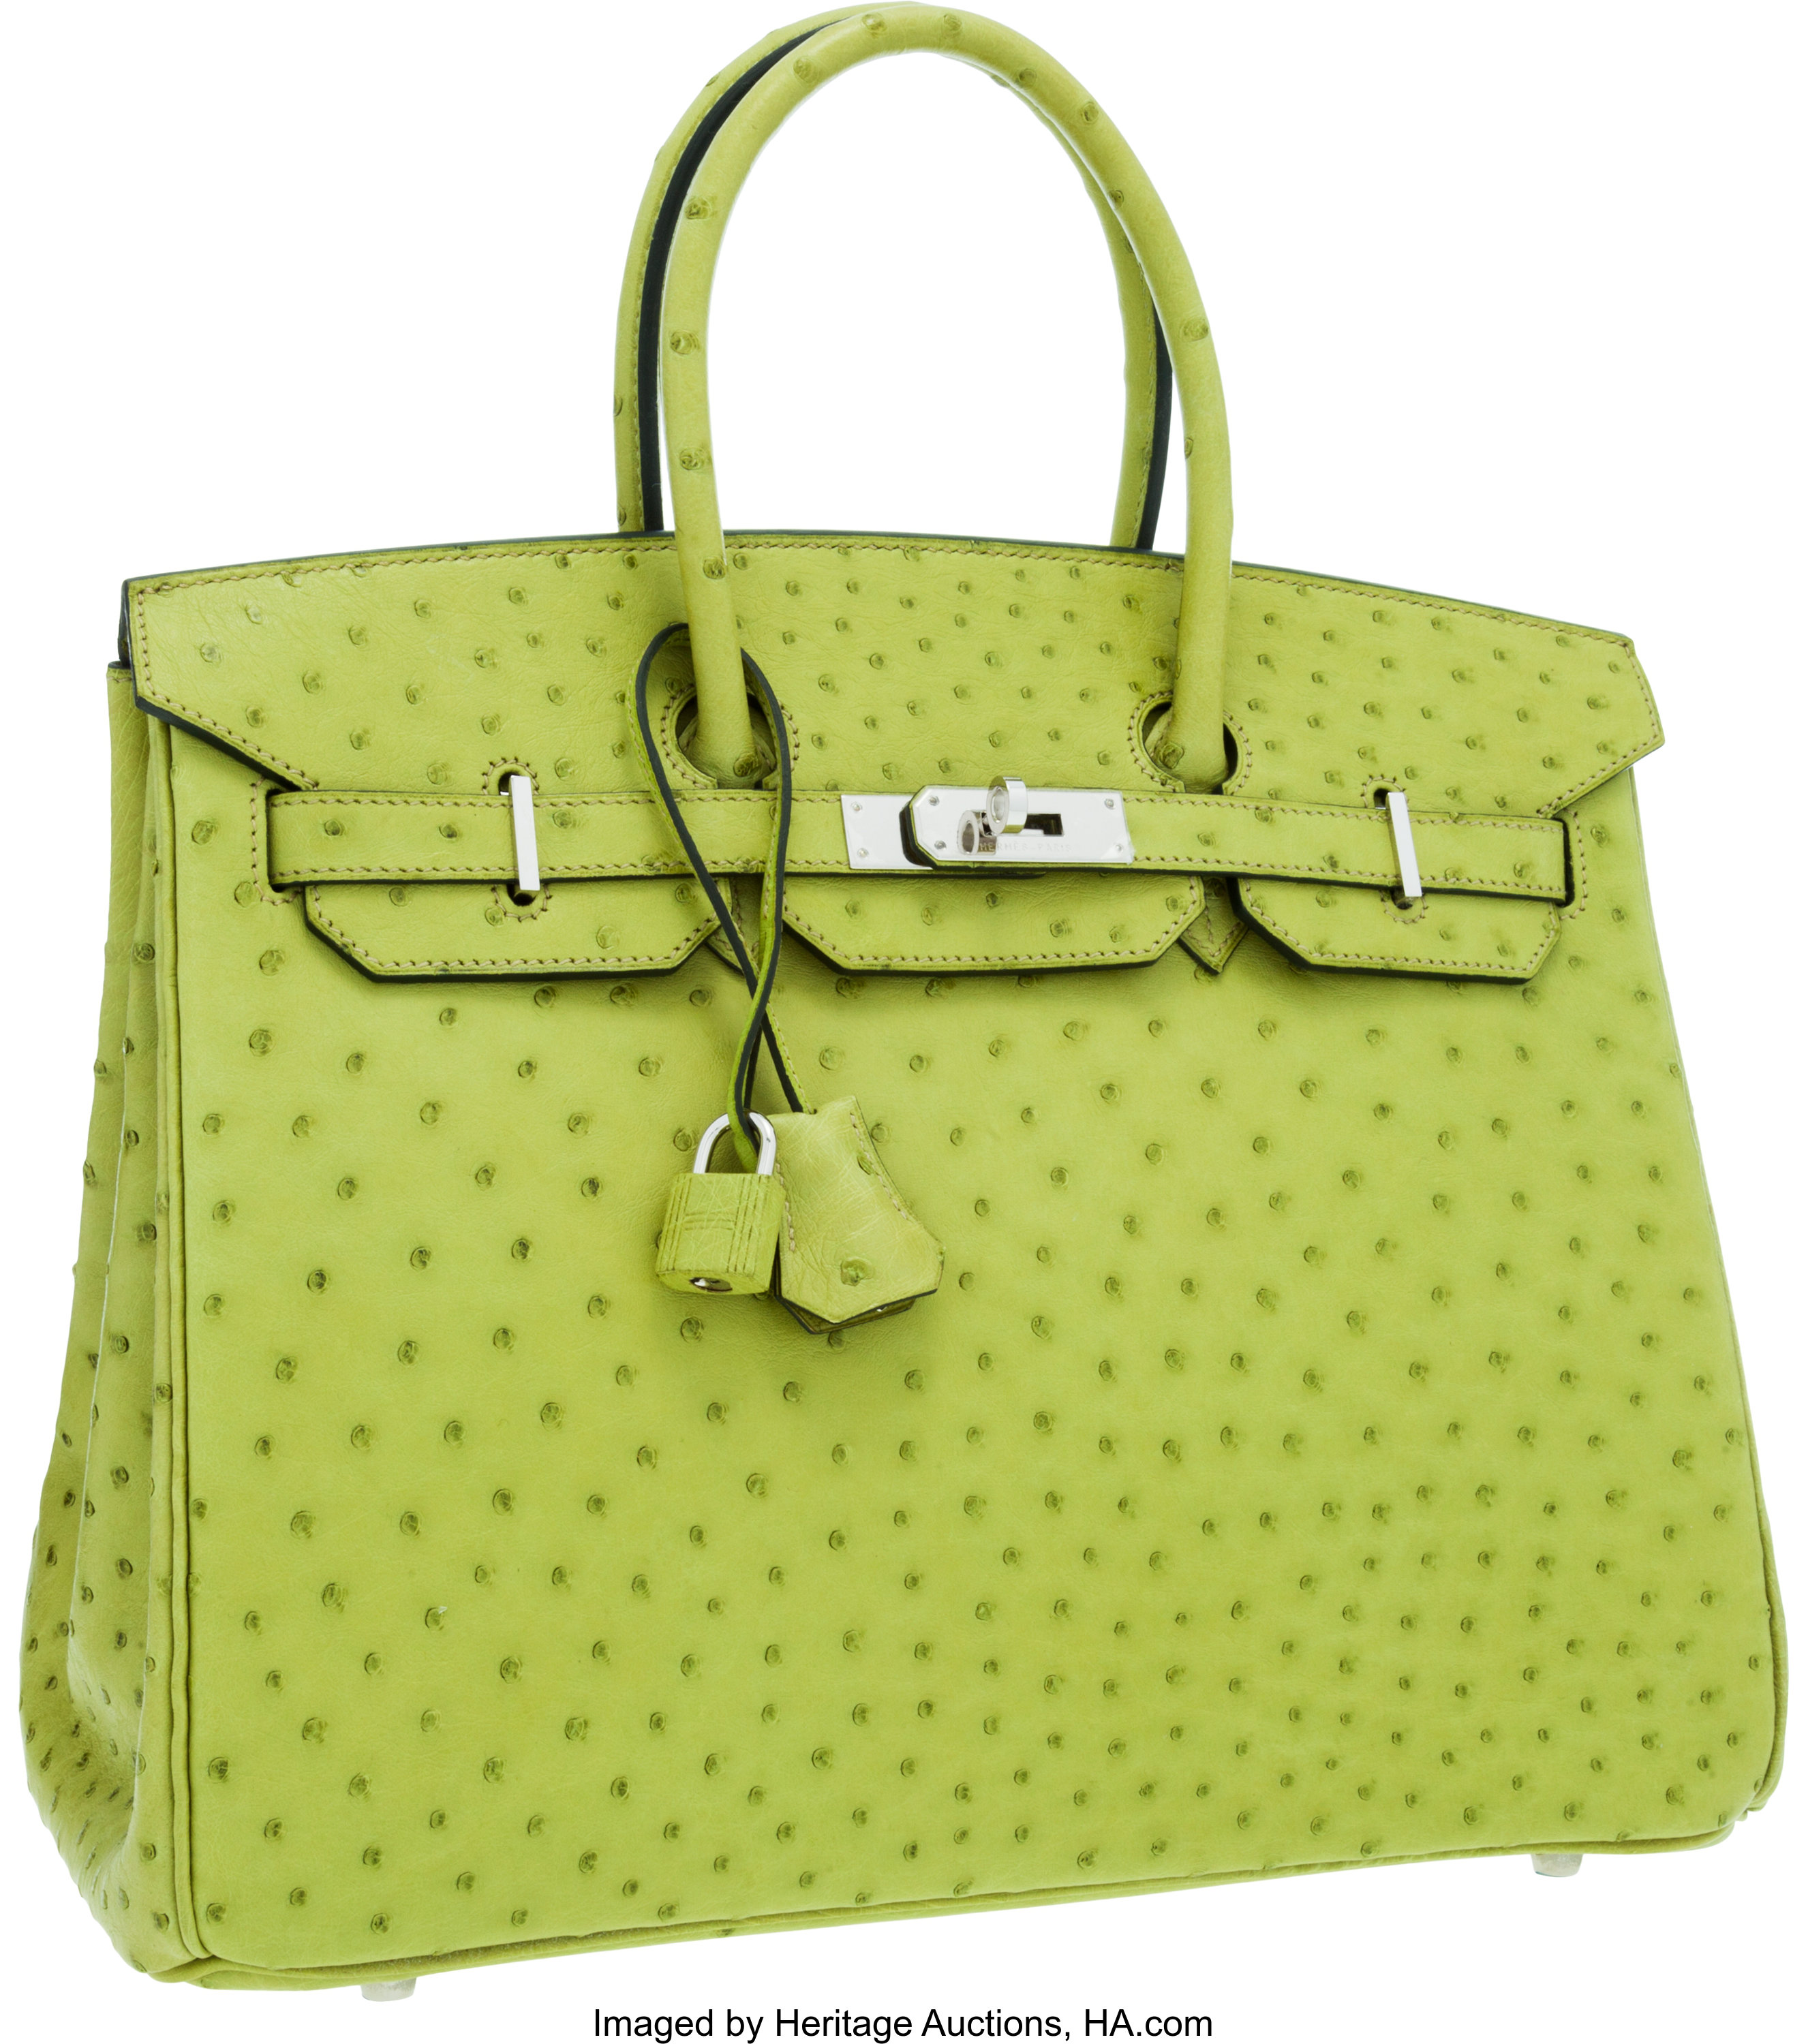 Hermes 35cm Vert Anis Ostrich Birkin Bag with Palladium Hardware., Lot  #56182